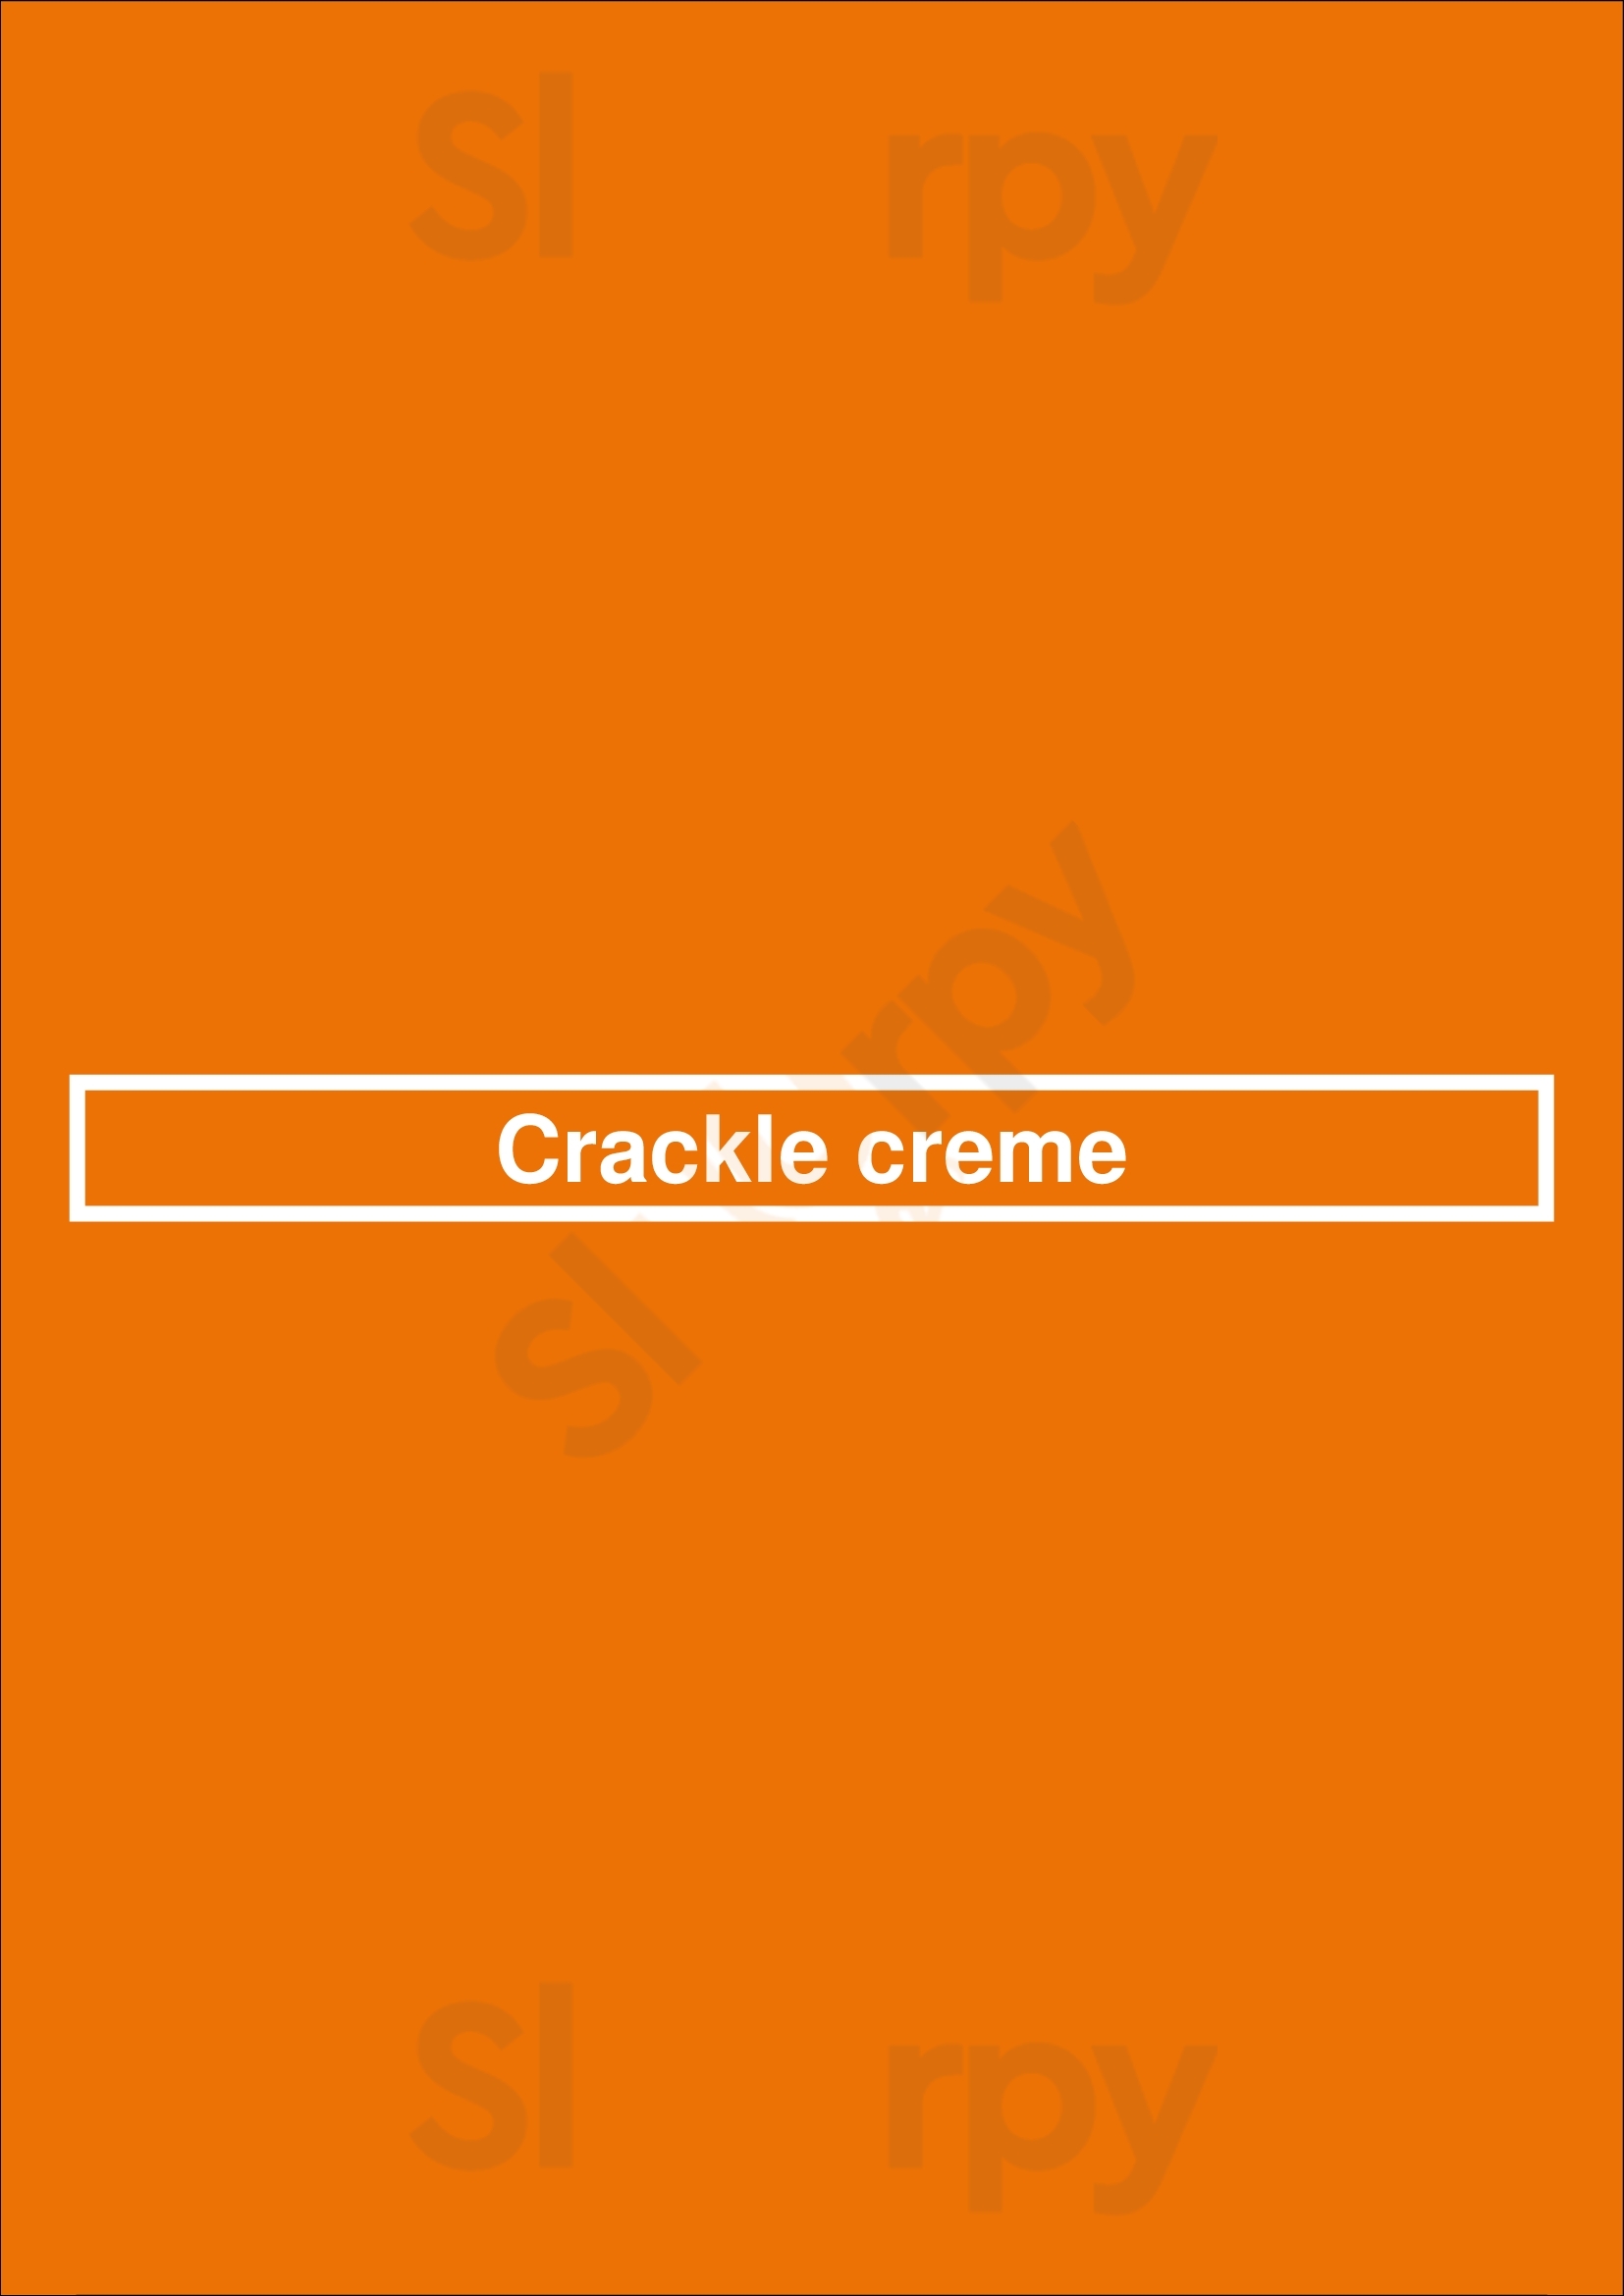 Crackle Creme Vancouver Menu - 1